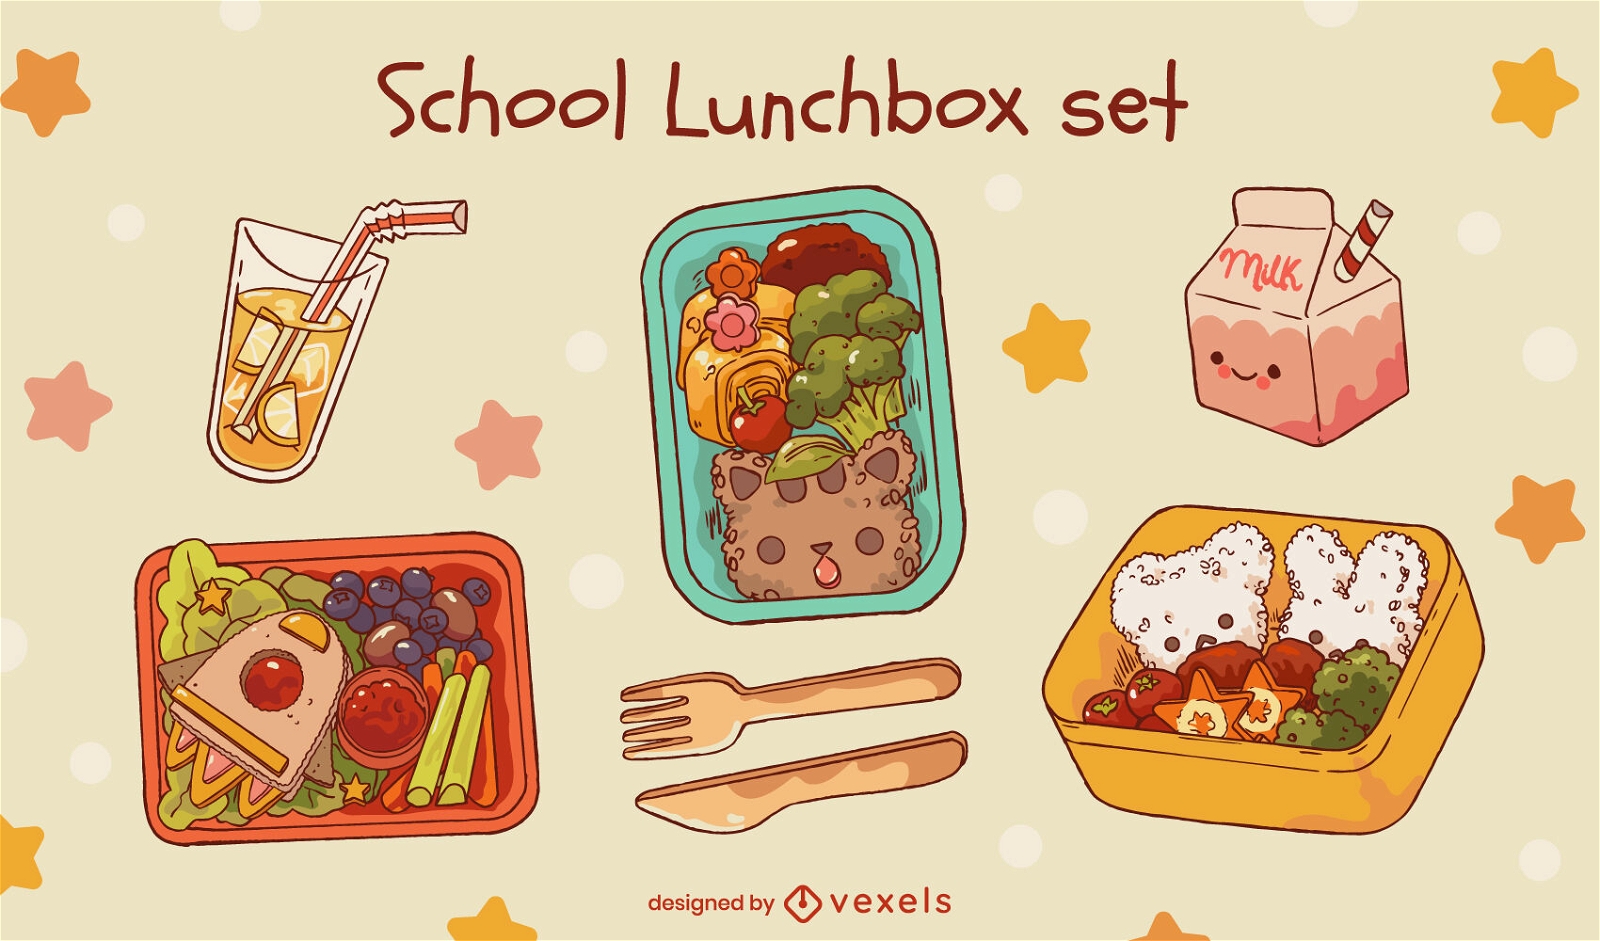 S??es Lunchbox-Set f?r die Schule